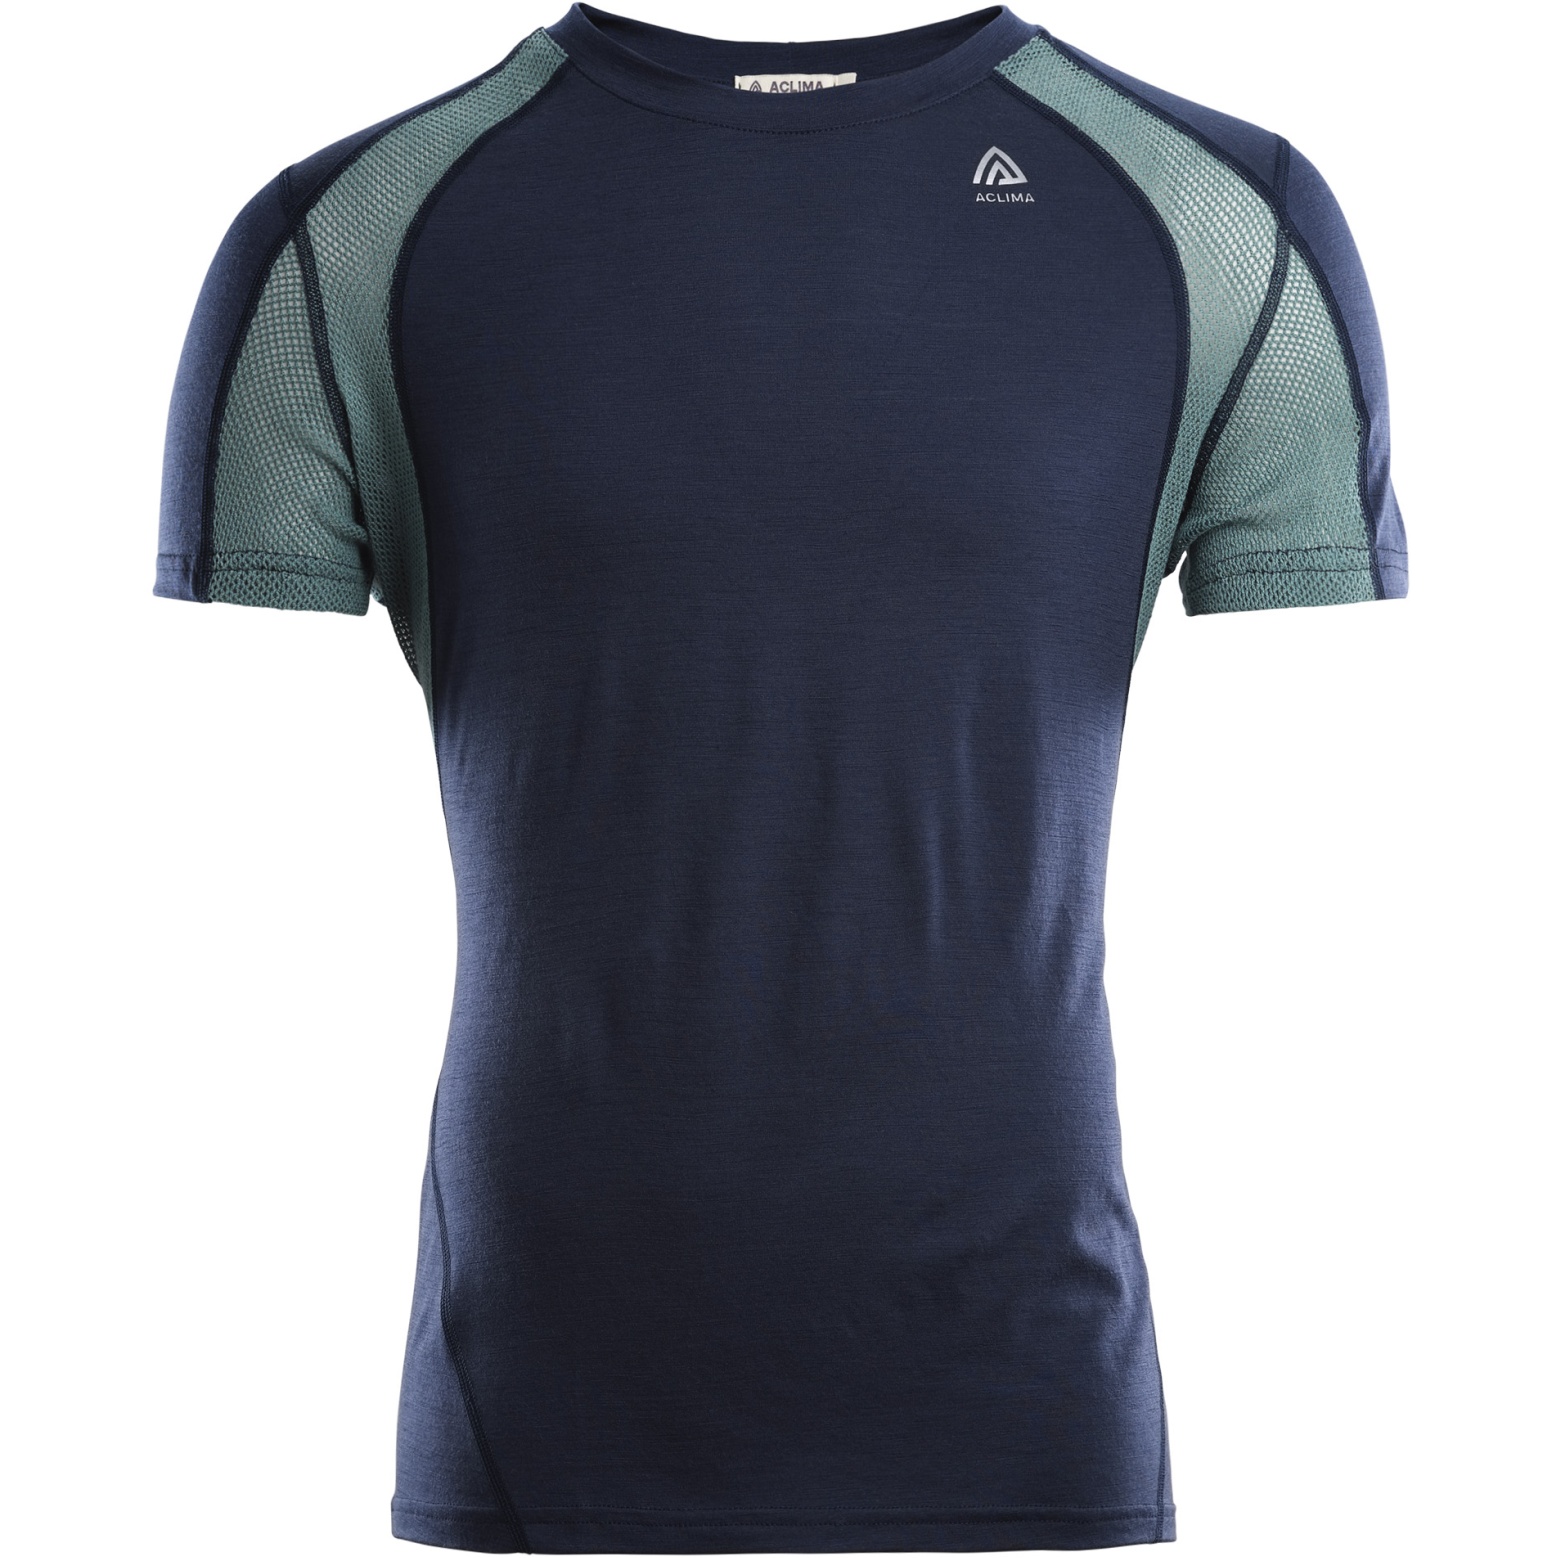 Produktbild von Aclima Lightwool Sports T-Shirt - navy blazer/north atlantic